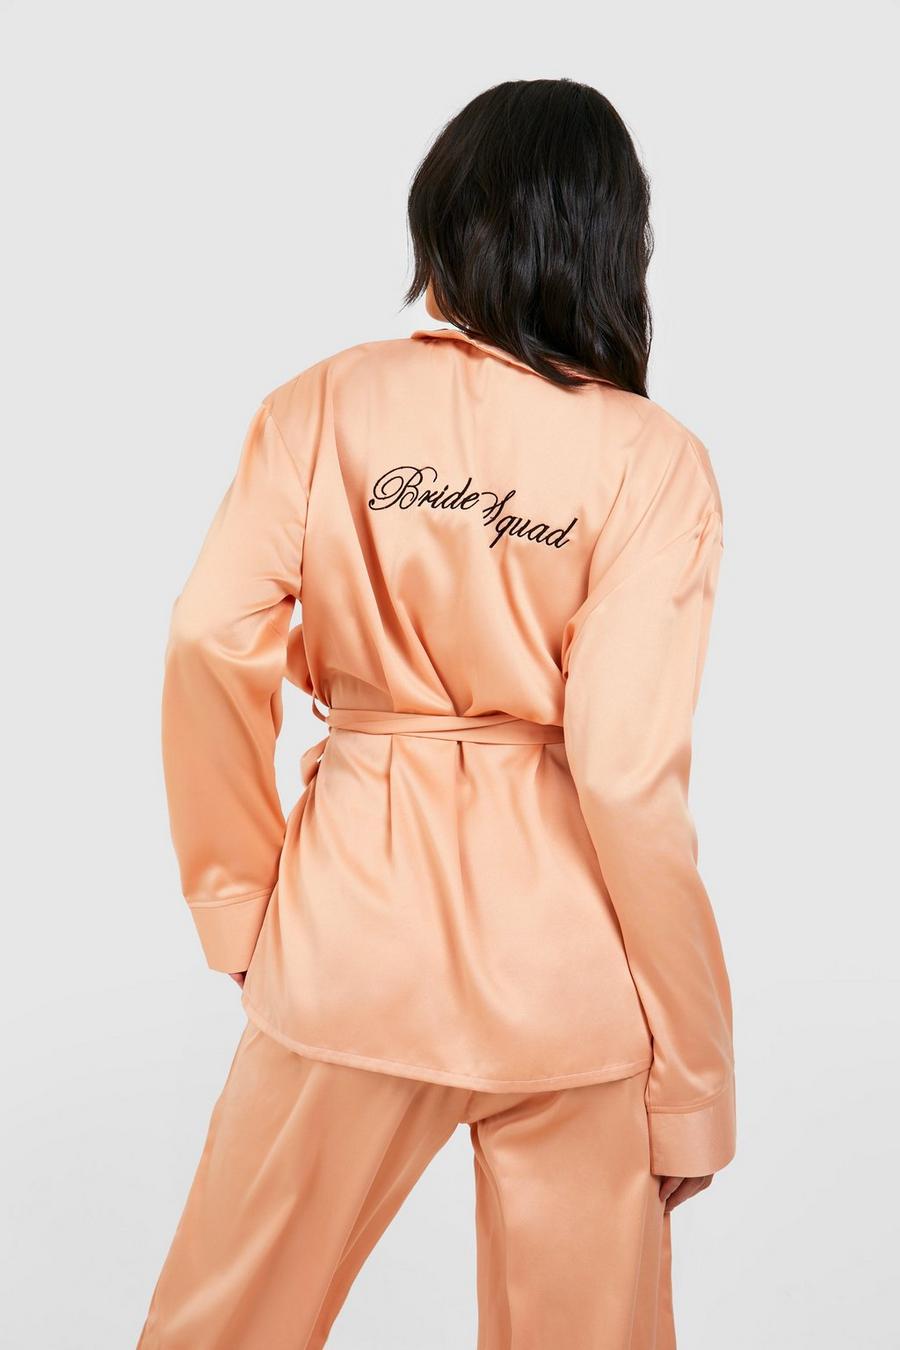 Rose gold metallic Premium Bride Squad Tie Waist Satin Trouser Pyjama Set